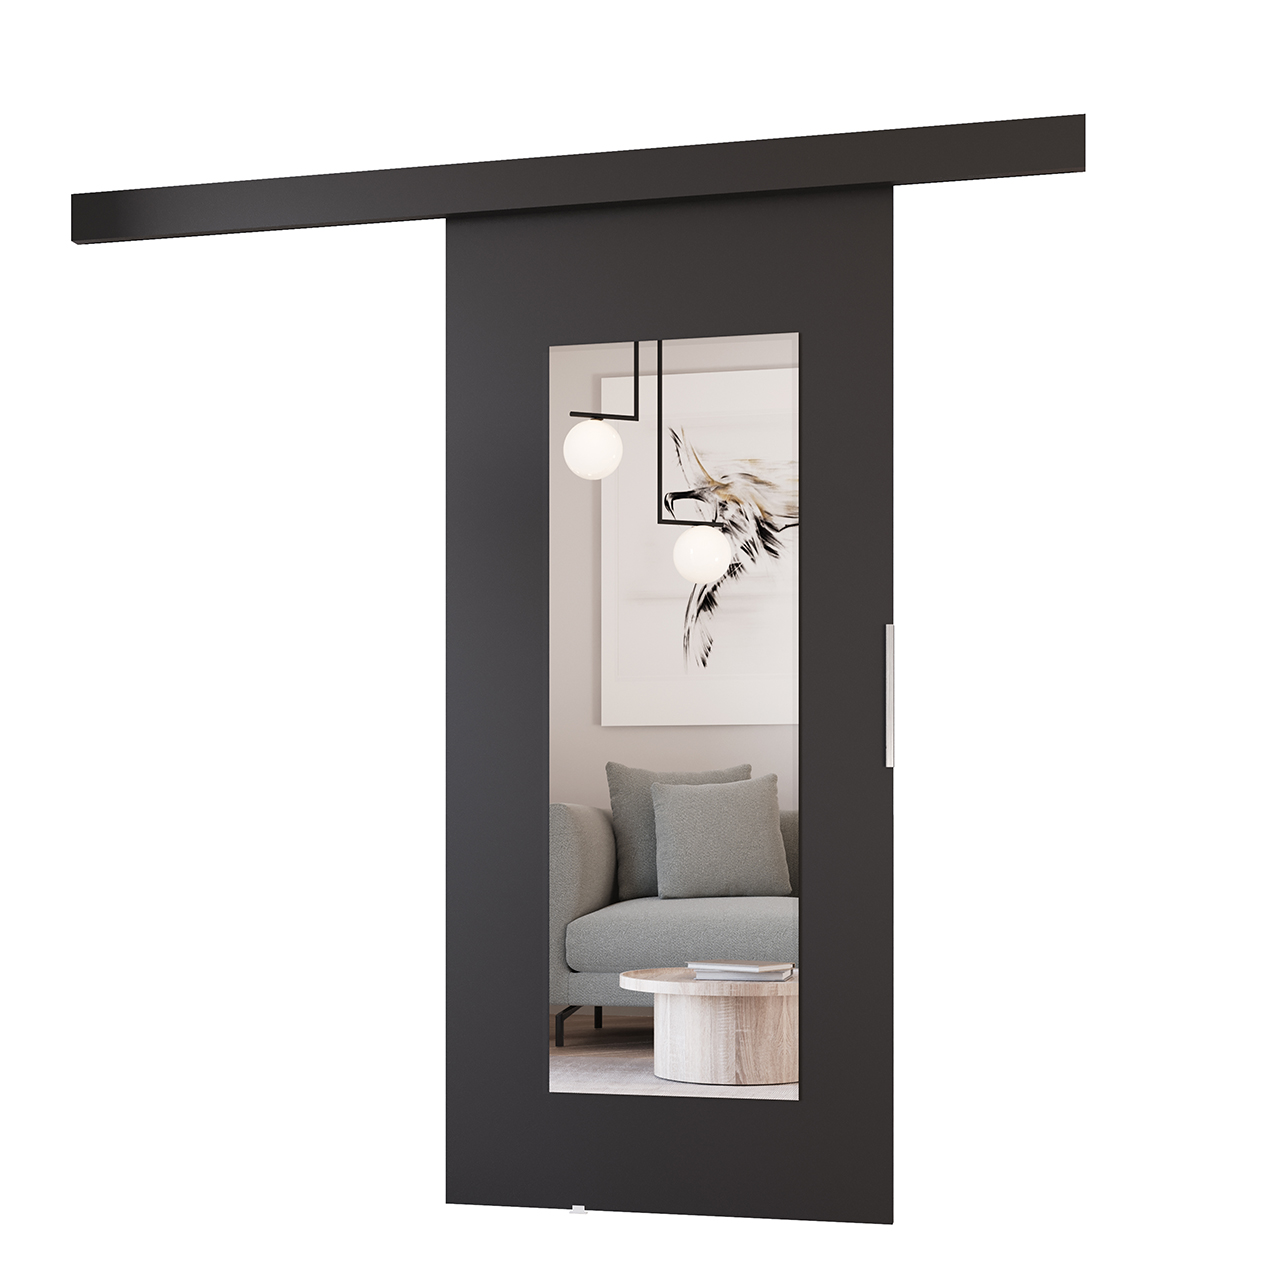 Sliding doors with mirror ILIS 90 black